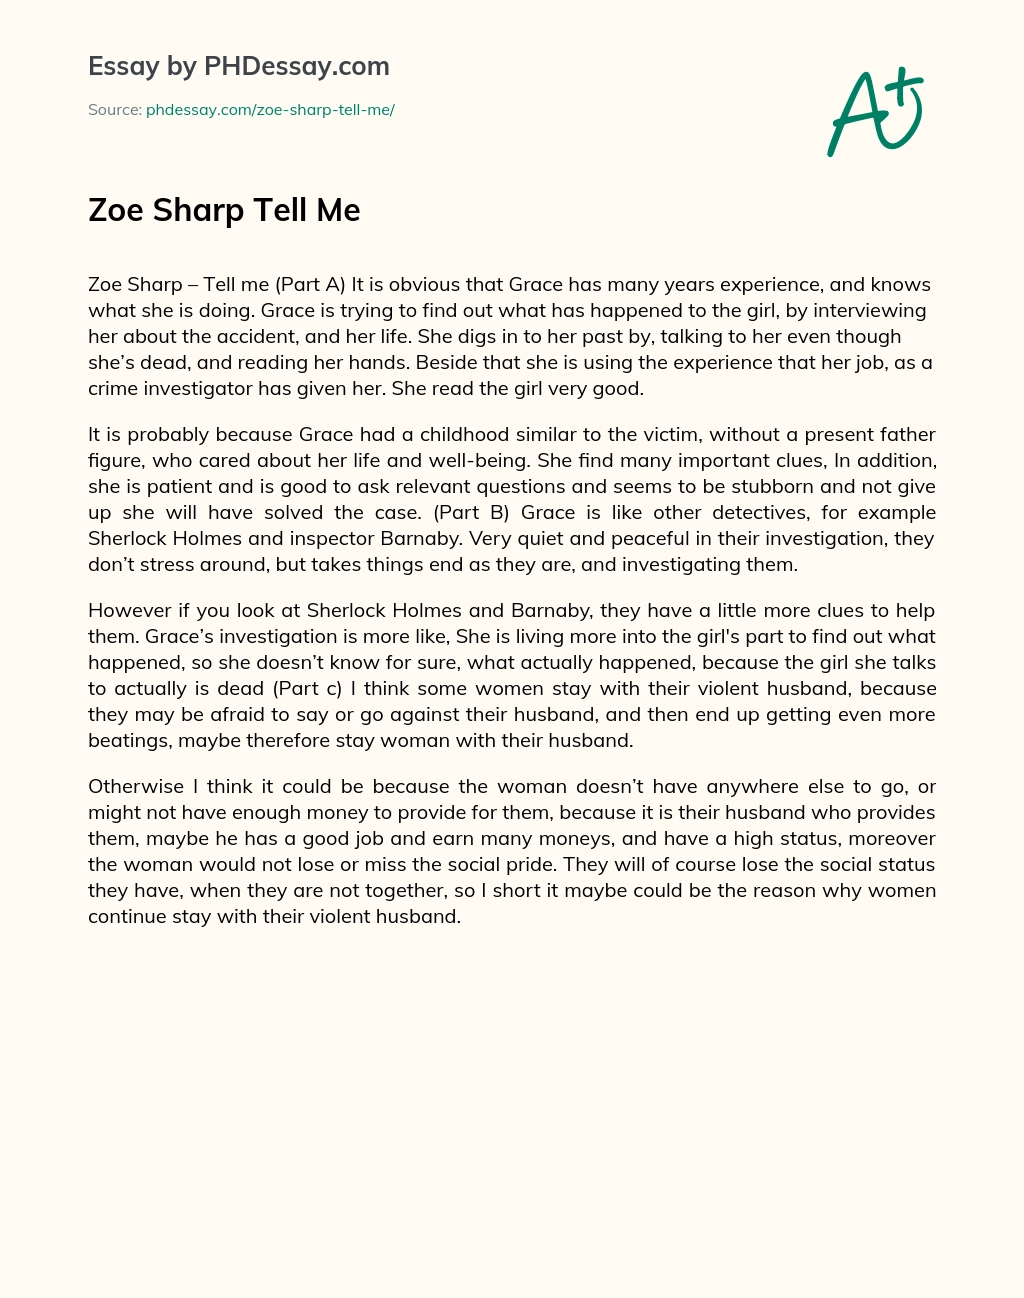 Zoe Sharp Tell Me essay